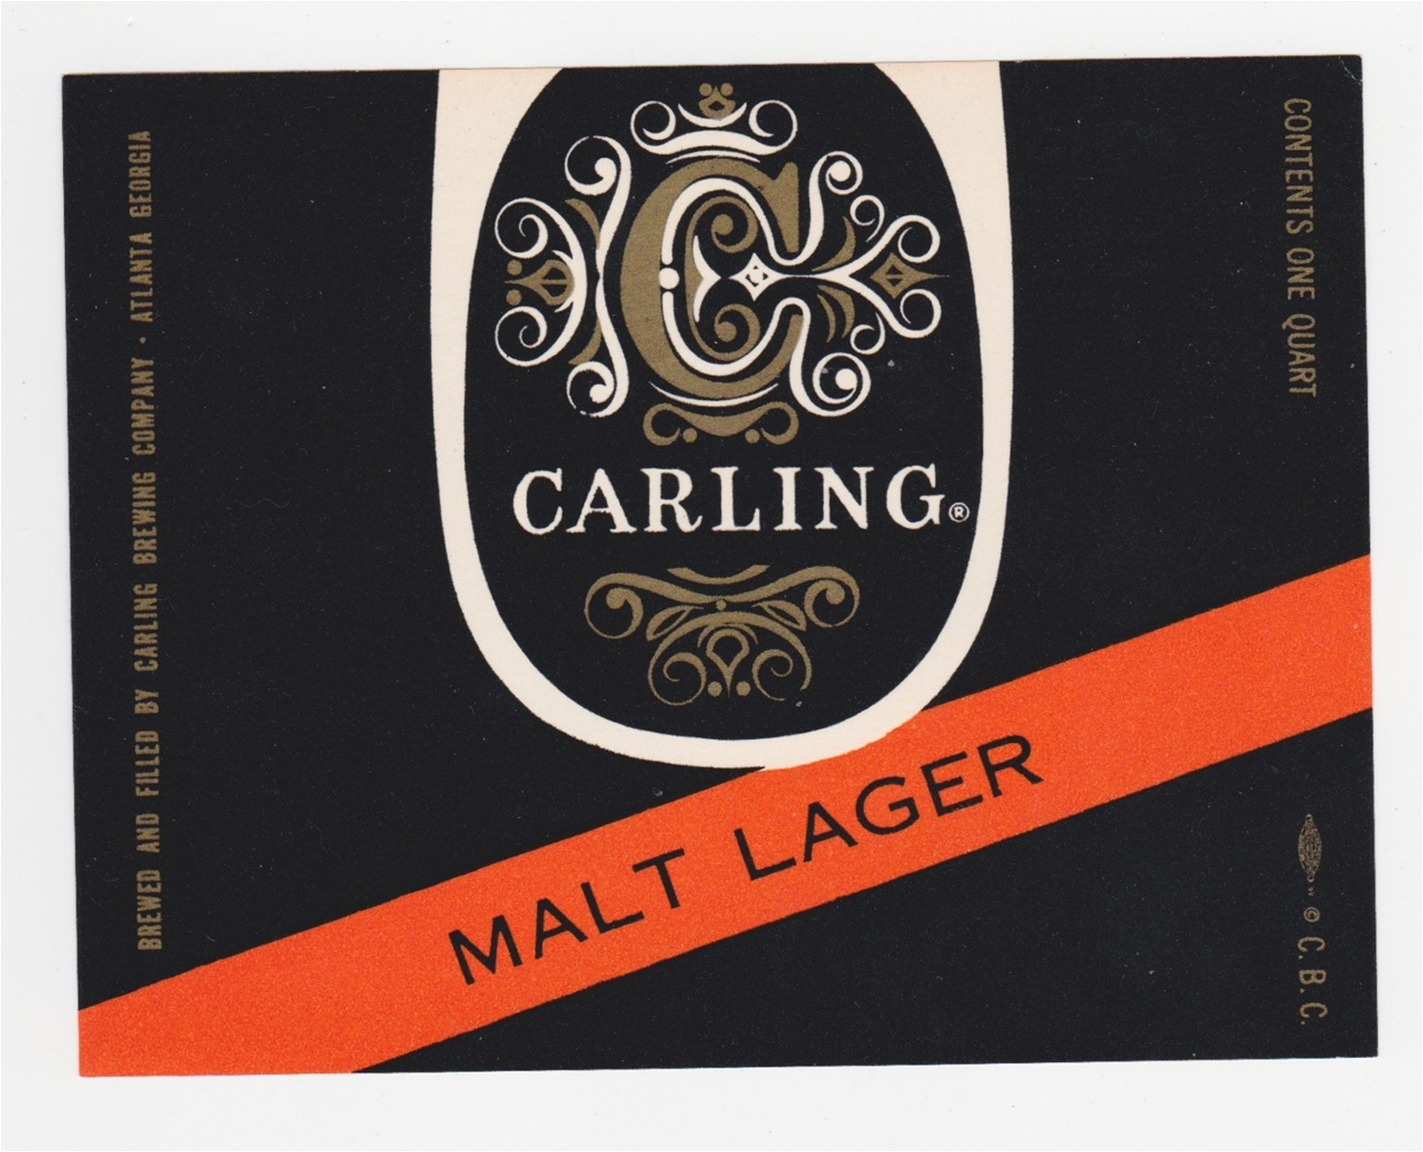 Carling Malt Lager Beer Label